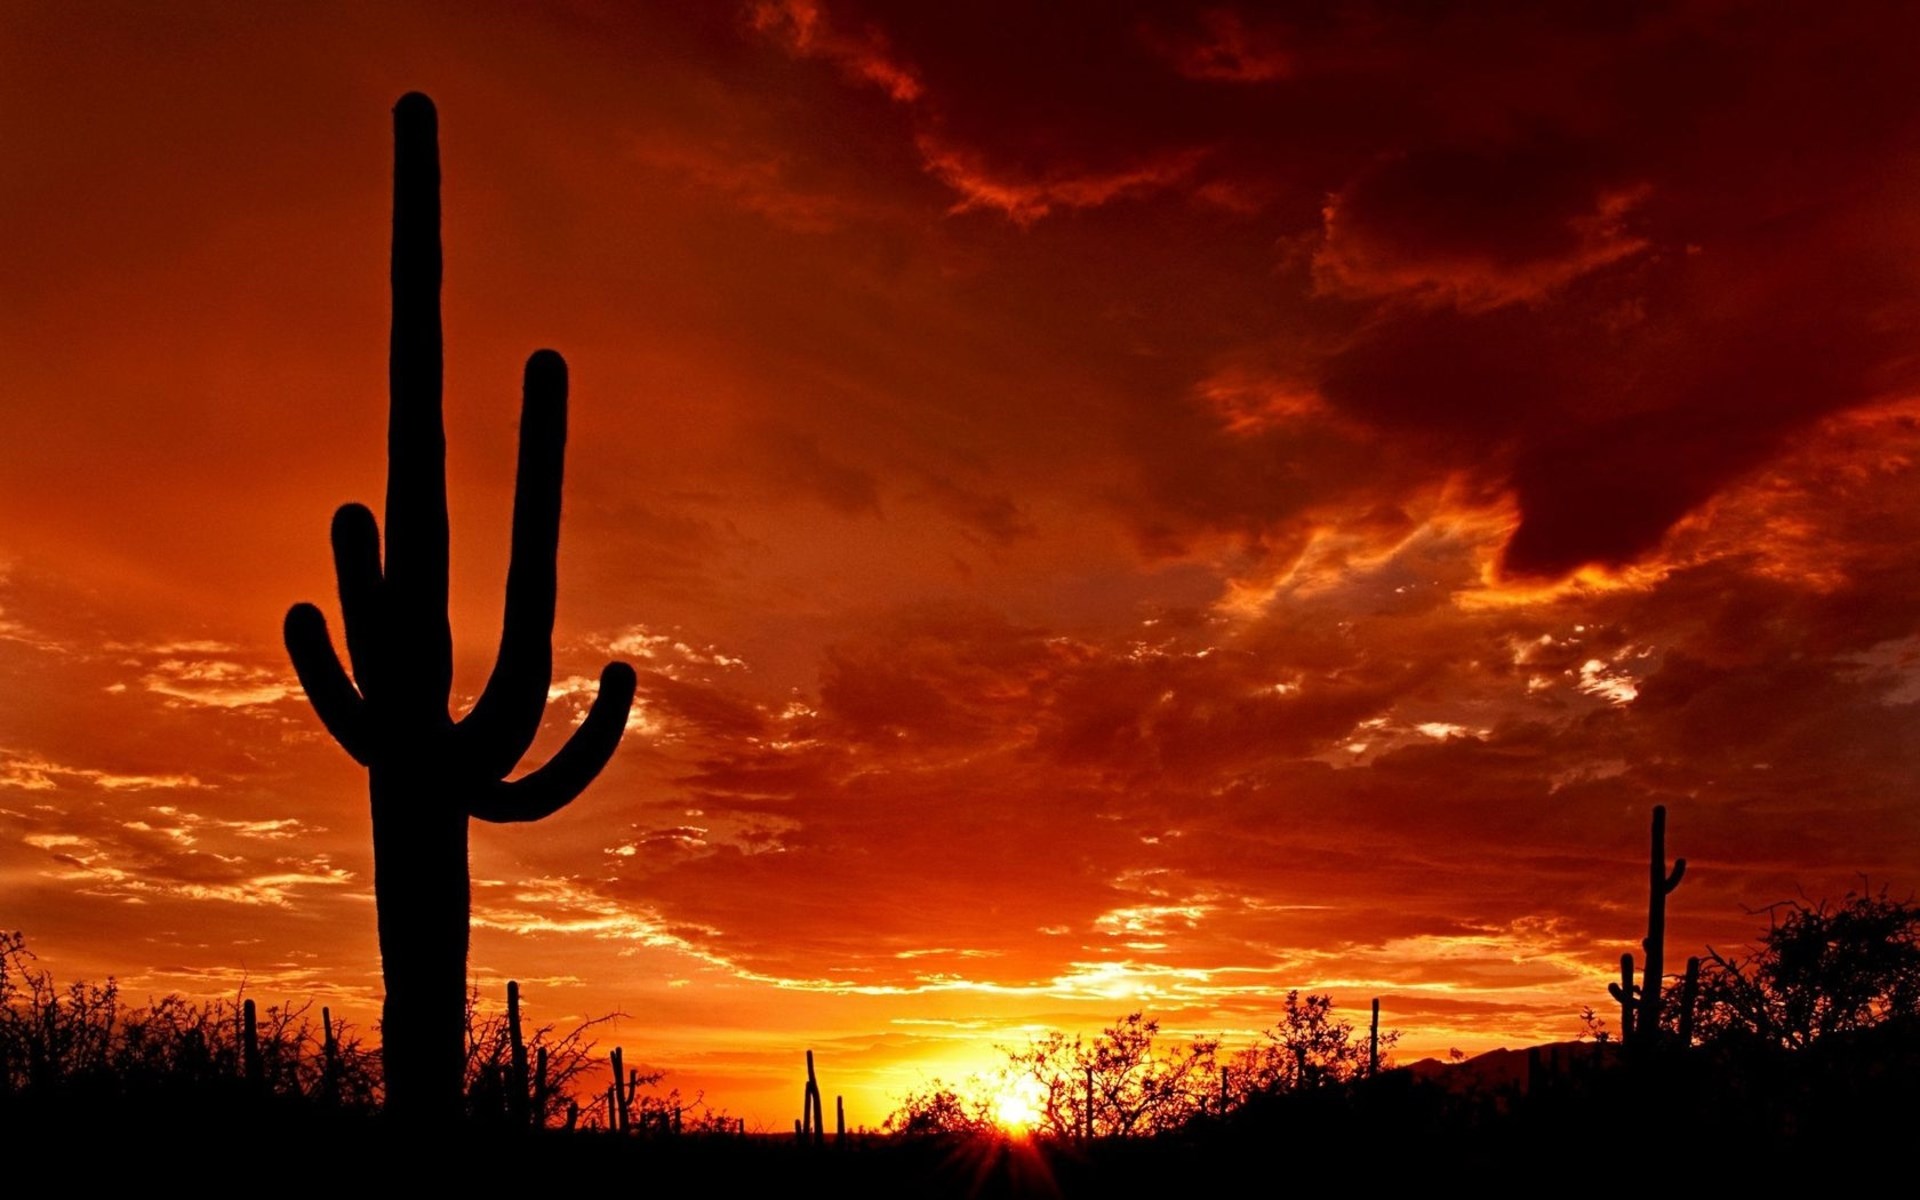 Evening Cactus Sun Sunset - [1920 x 1200]